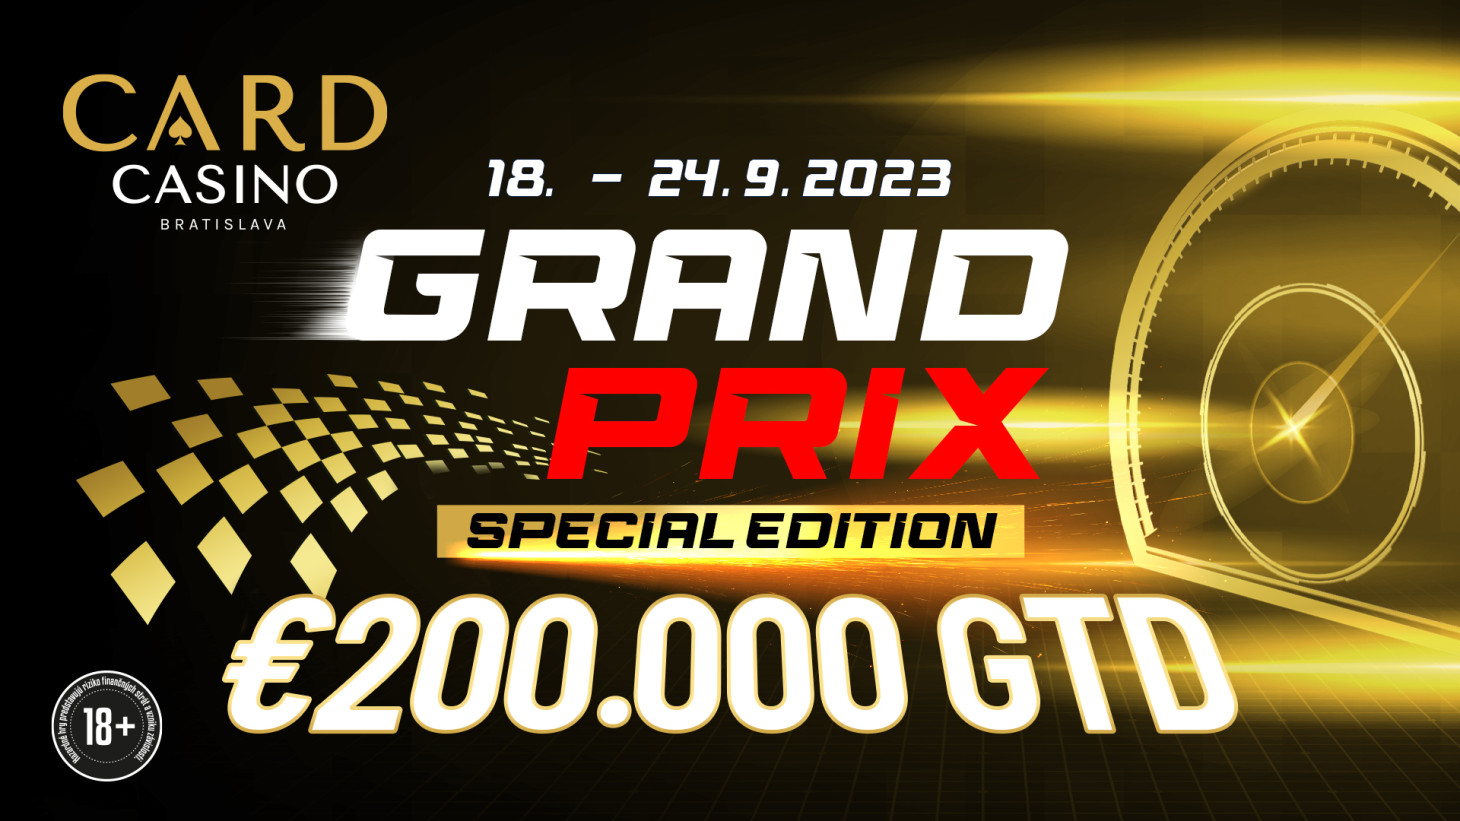 Grand Prix zum zweiten Mal! Machen Sie sich bereit für die Special Edition mit €200.000 GTD